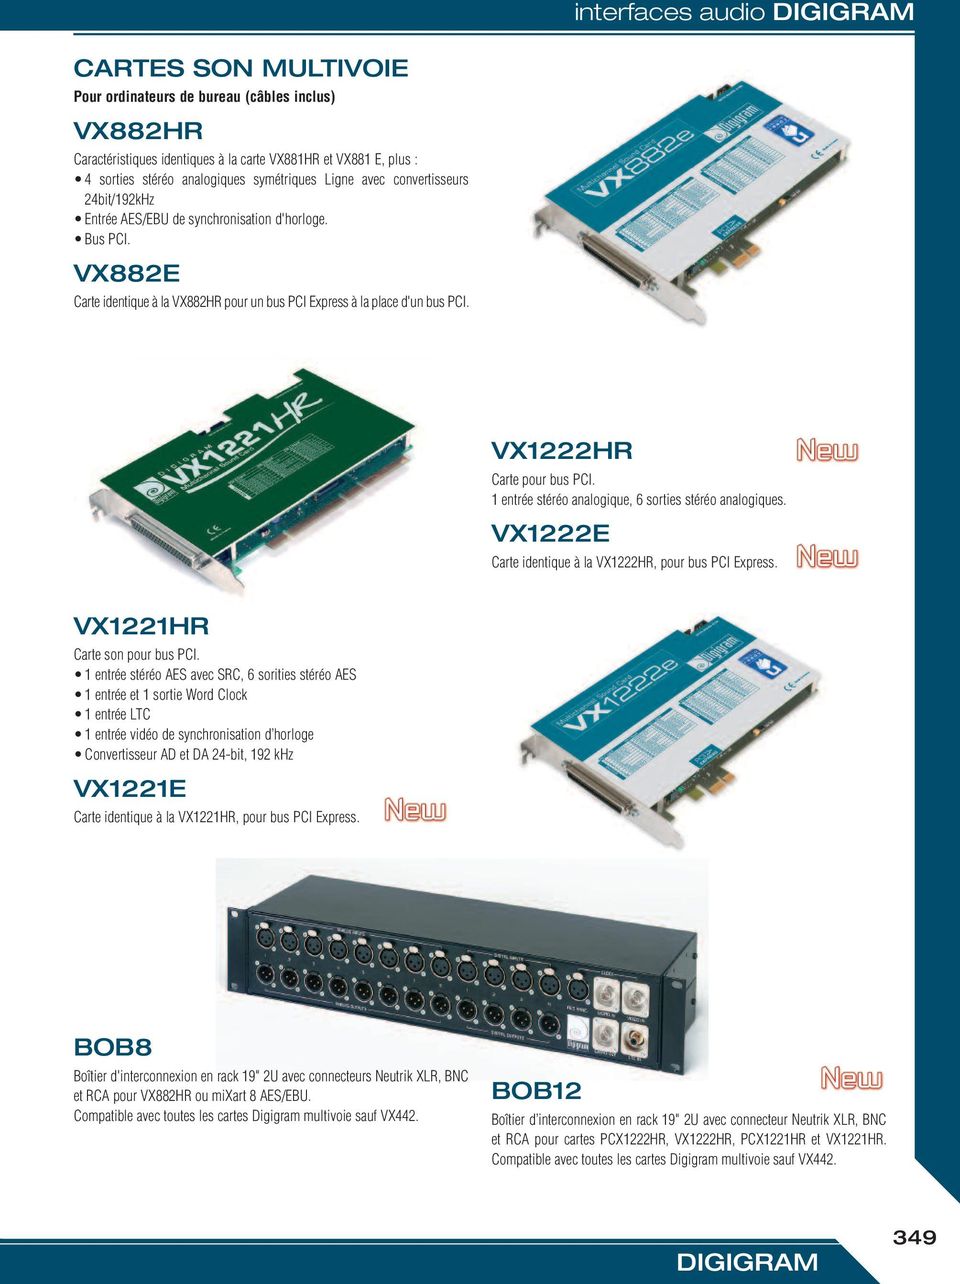 VX1222HR Carte pour bus PCI. 1 entrée stéréo analogique, 6 sorties stéréo analogiques. VX1222E Carte identique à la VX1222HR, pour bus PCI Express. VX1221HR Carte son pour bus PCI.